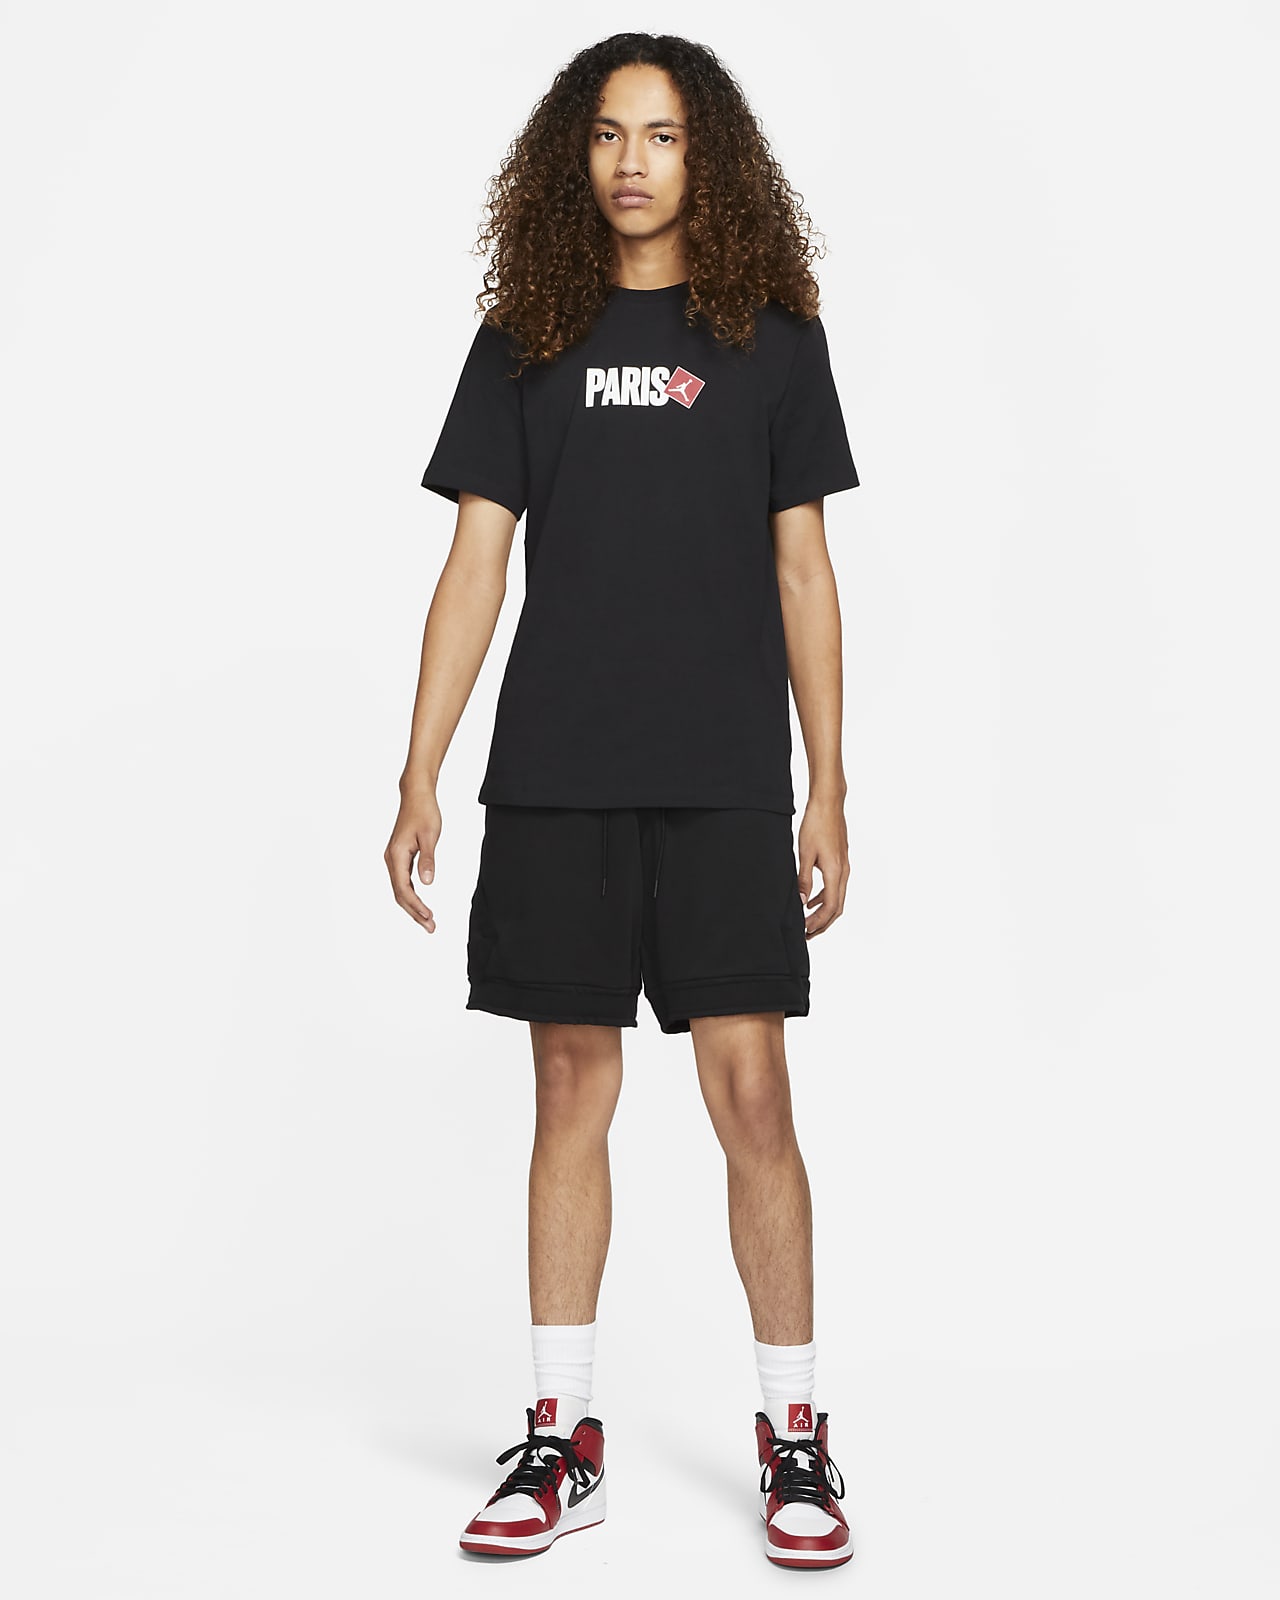 Jordan Paris Men's Short-Sleeve T-Shirt. Nike LU